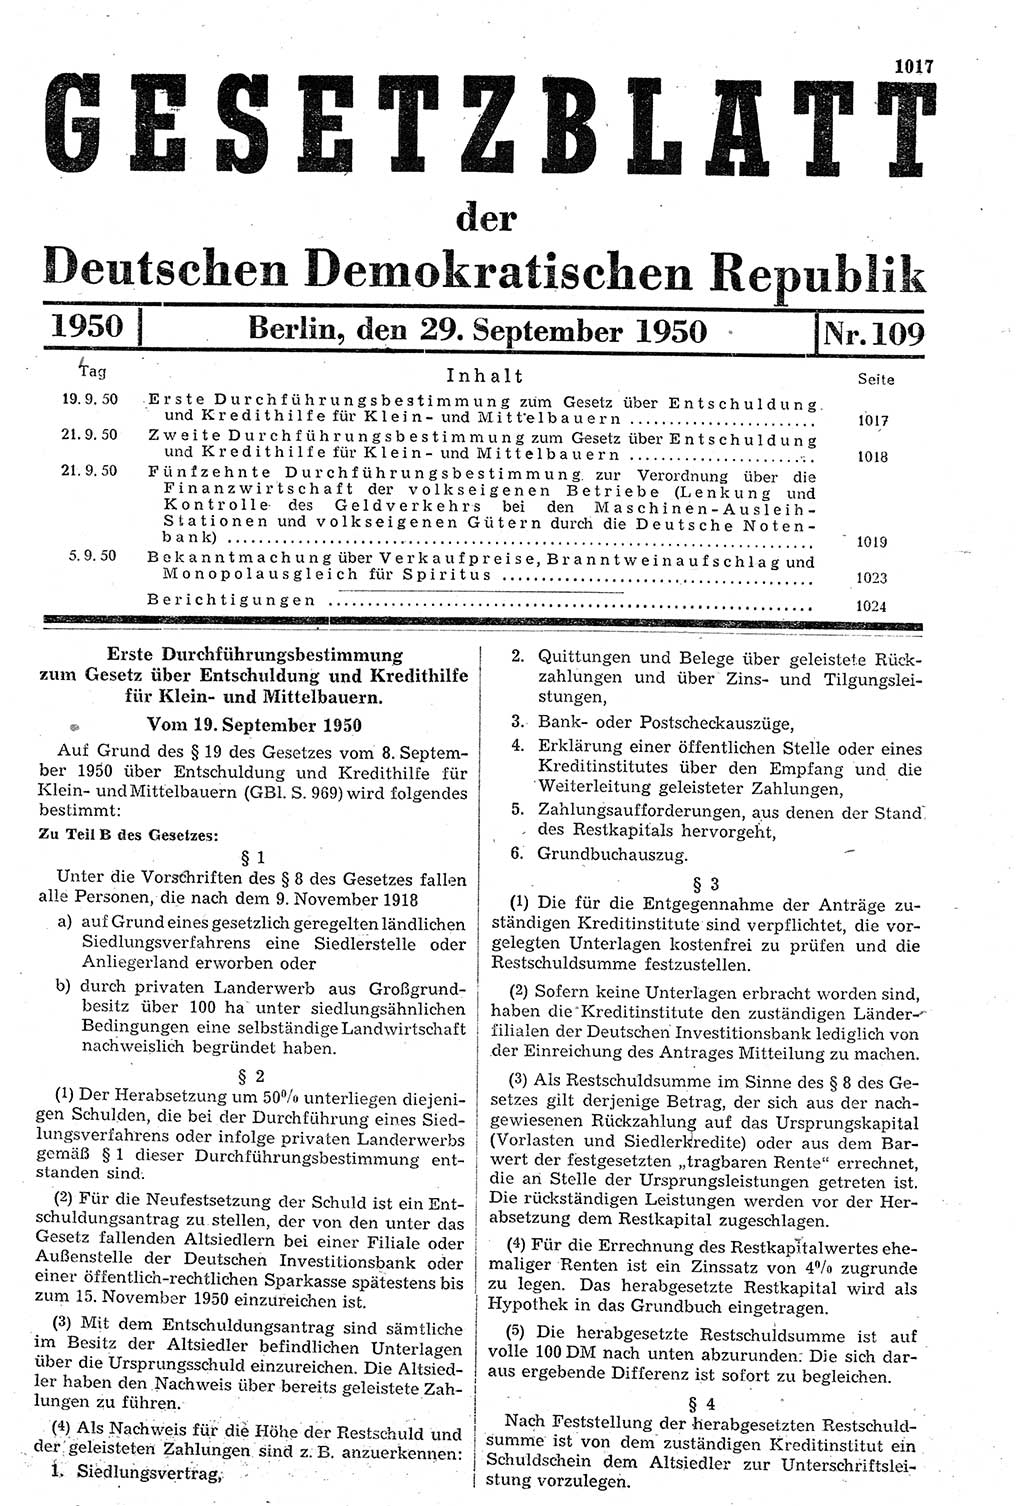 Gesetzblatt (GBl.) der Deutschen Demokratischen Republik (DDR) 1950, Seite 1017 (GBl. DDR 1950, S. 1017)